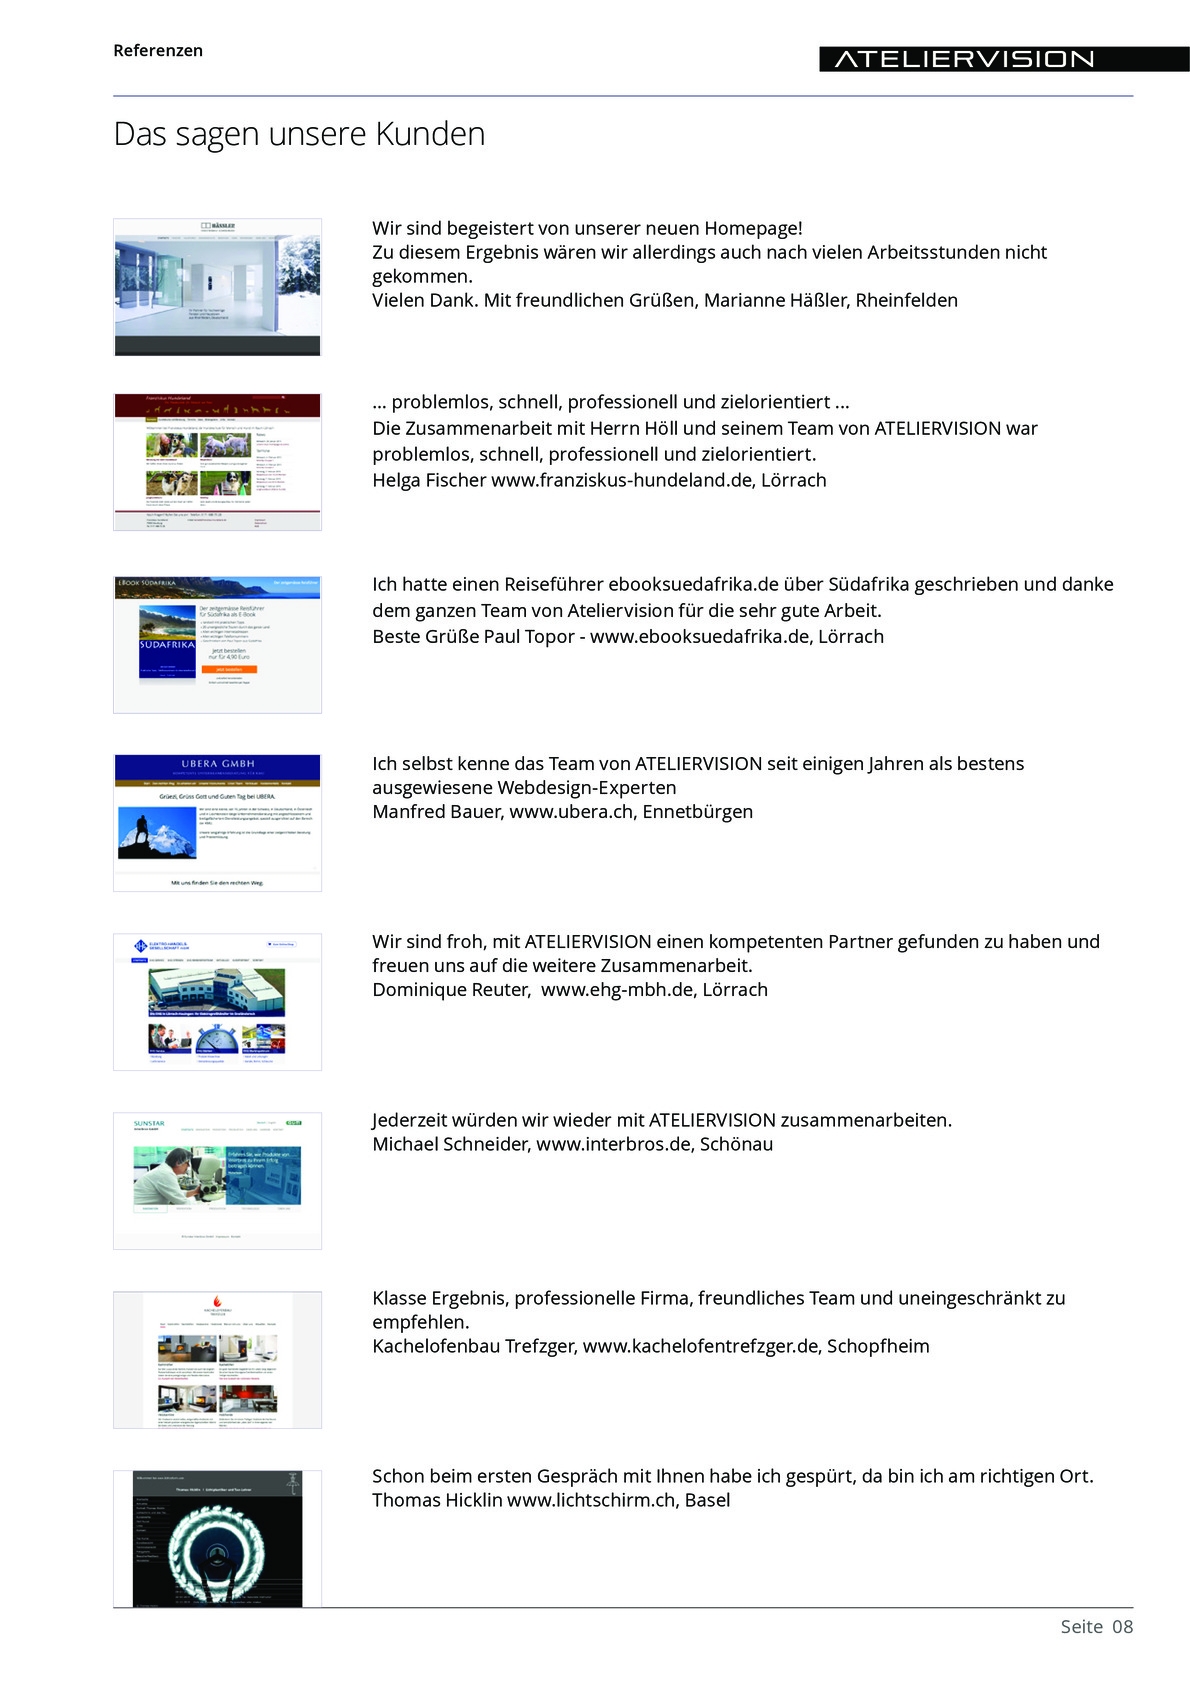 ATELIERVISION Referenzen aus PDF Datei Overview 8